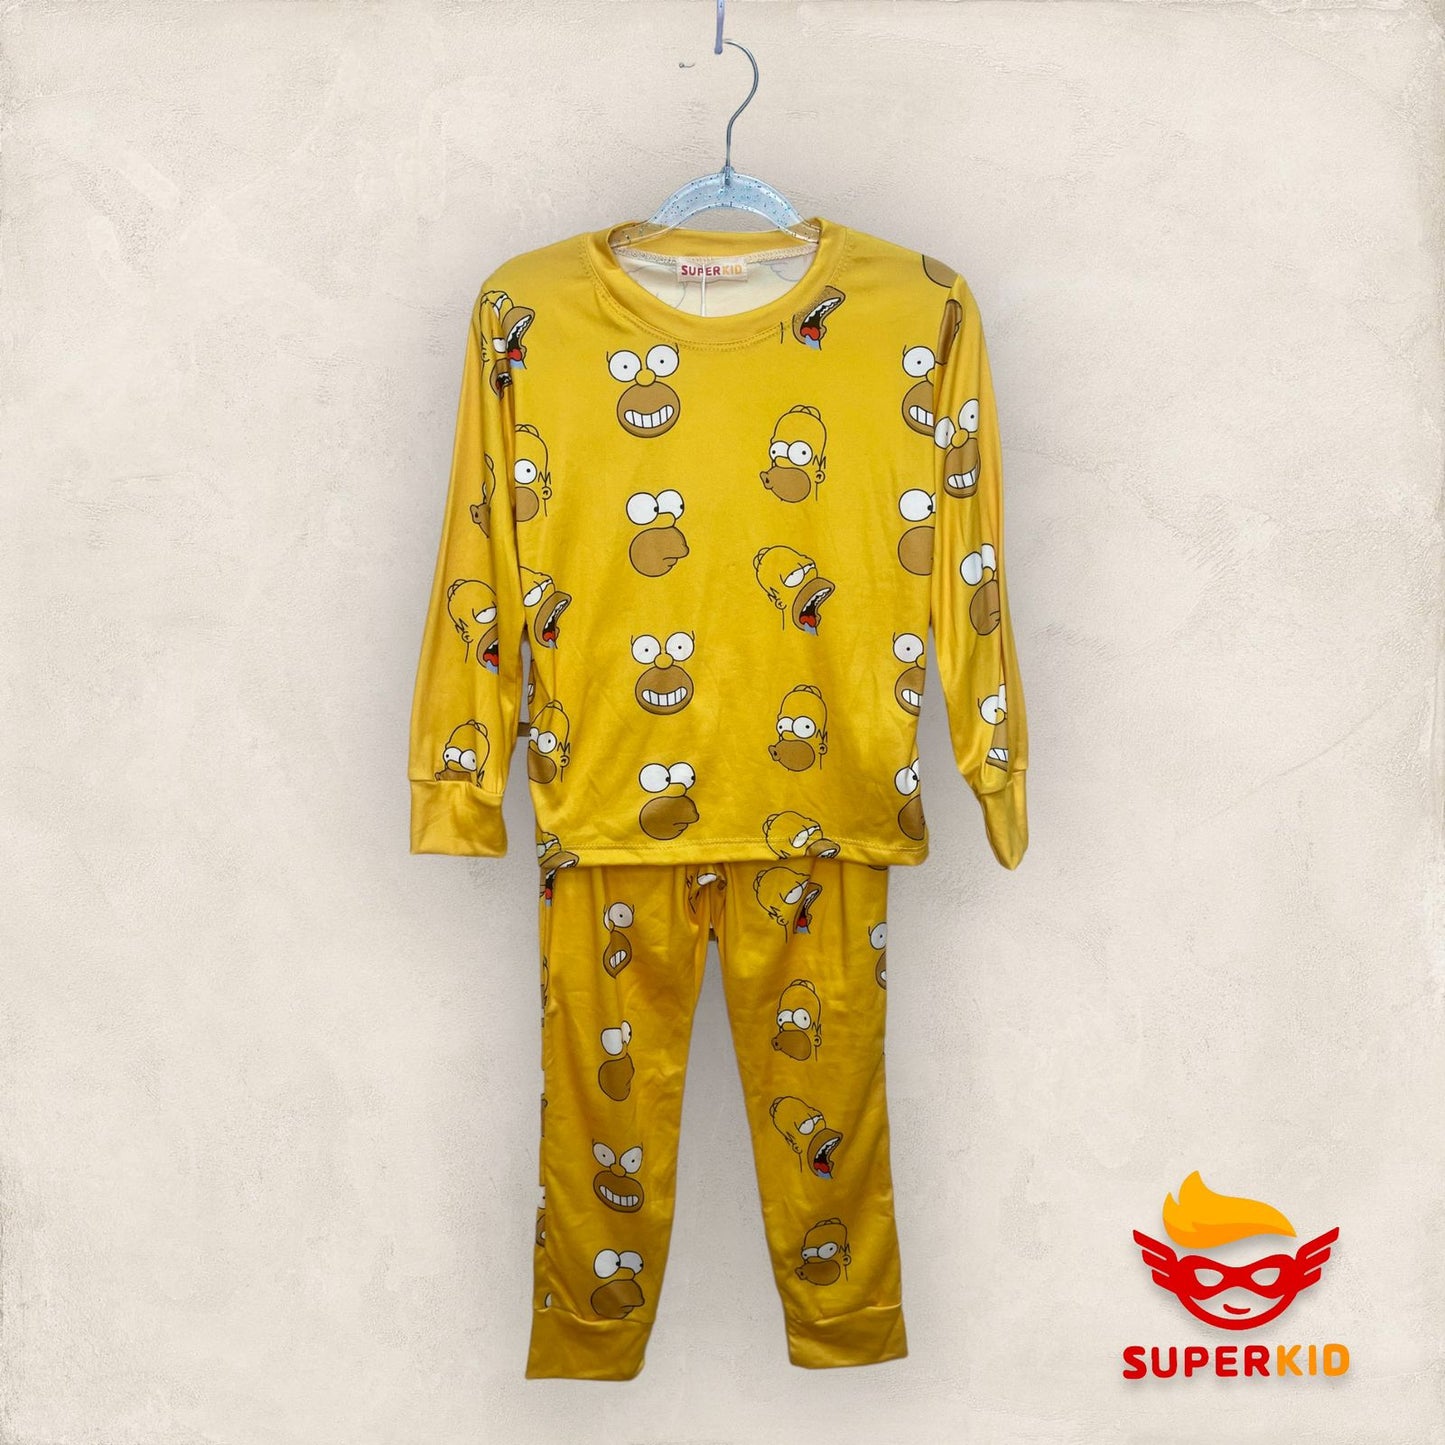 Promoción - Pijama de Simpsons